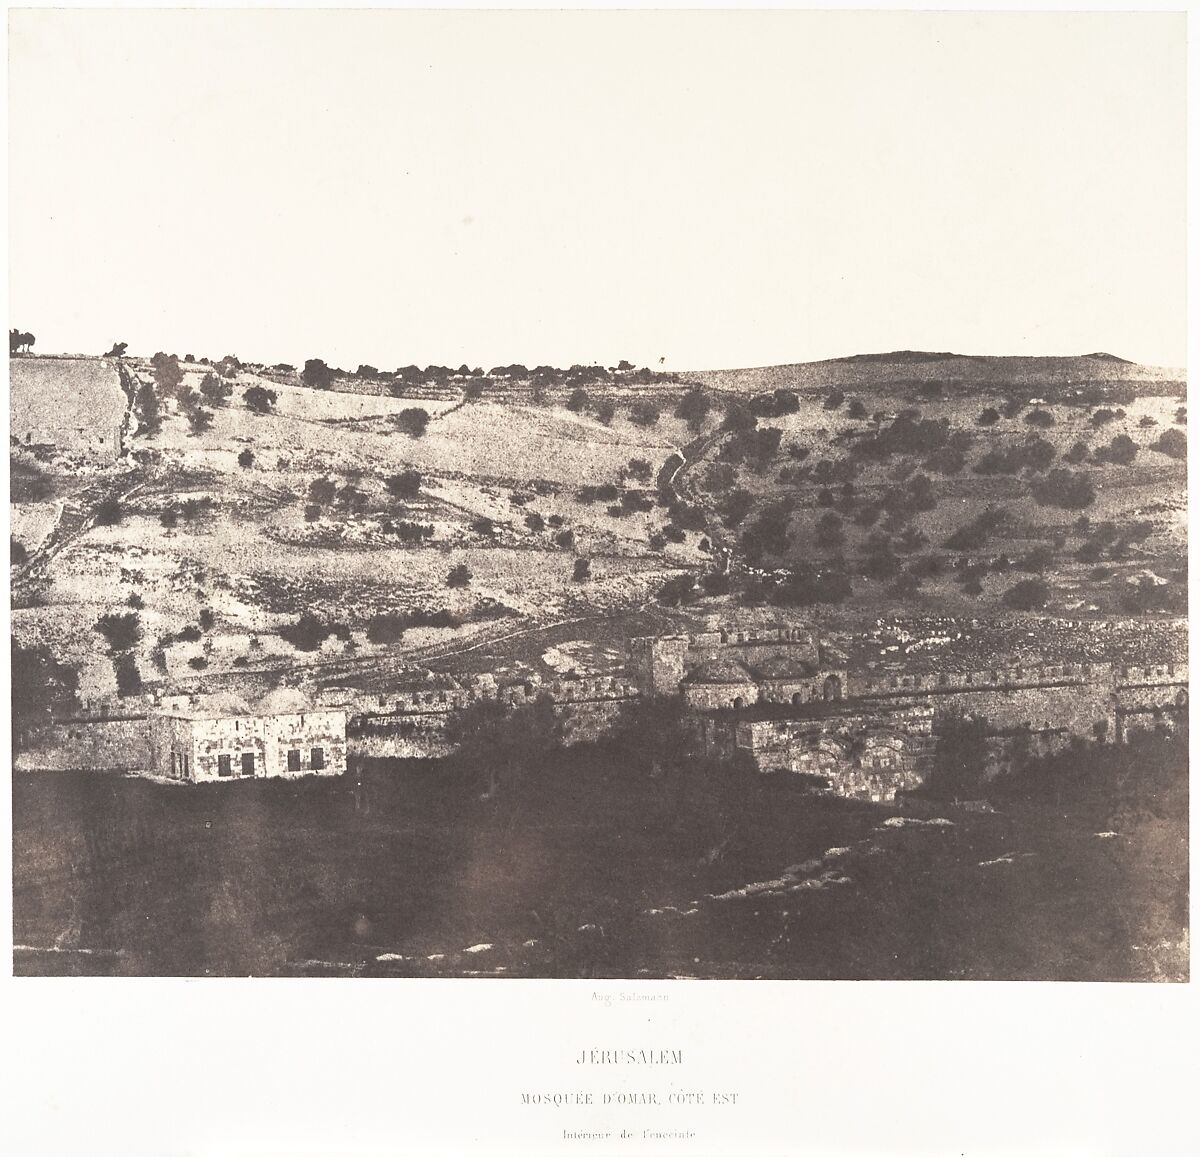 Jérusalem, Mosquée d'Omar, côté est, Intérieur de l'enceinte, 1, Auguste Salzmann (French, 1824–1872), Salted paper print from paper negative 